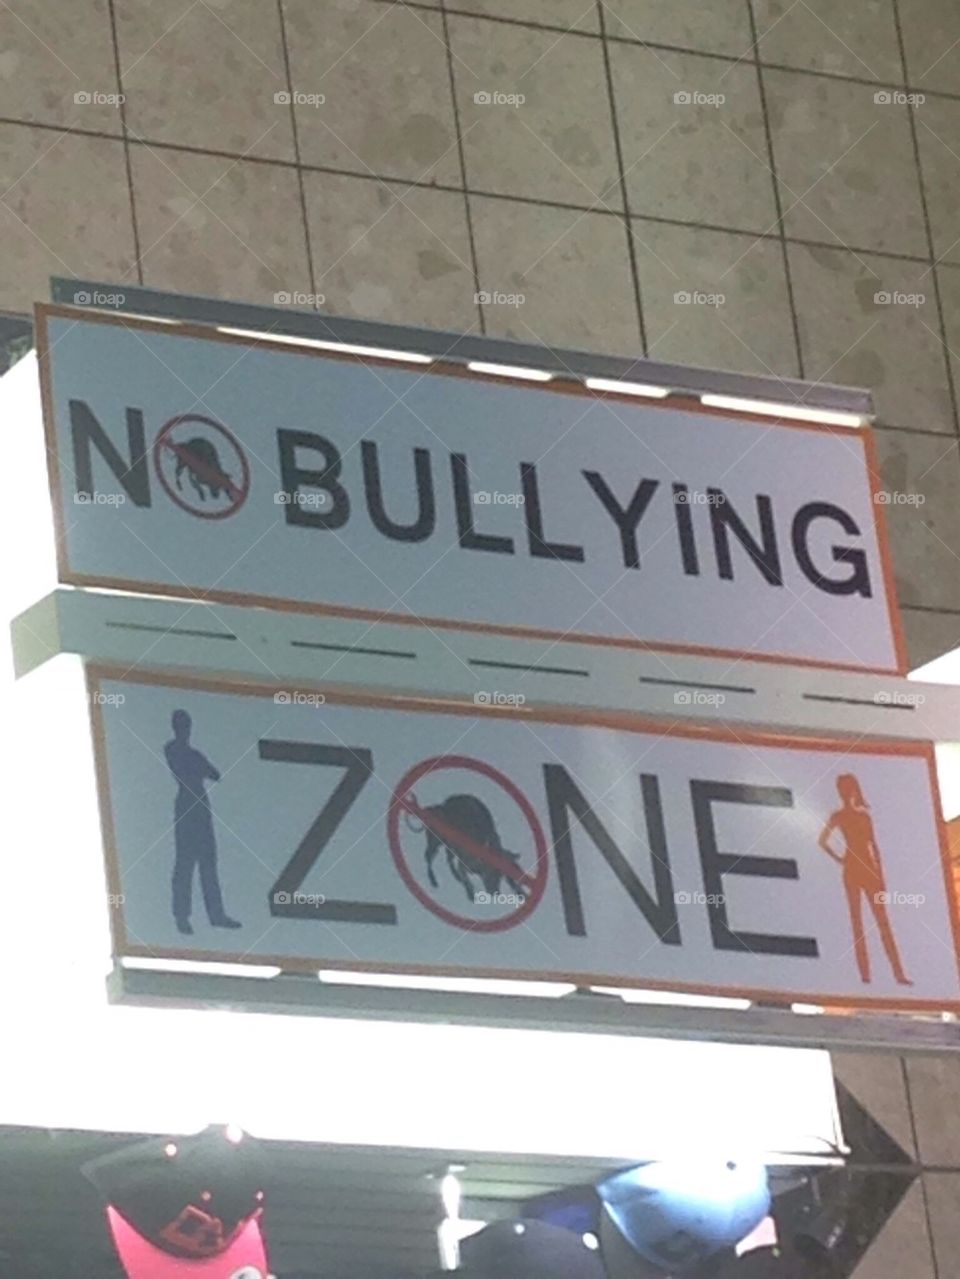 No bullying sign